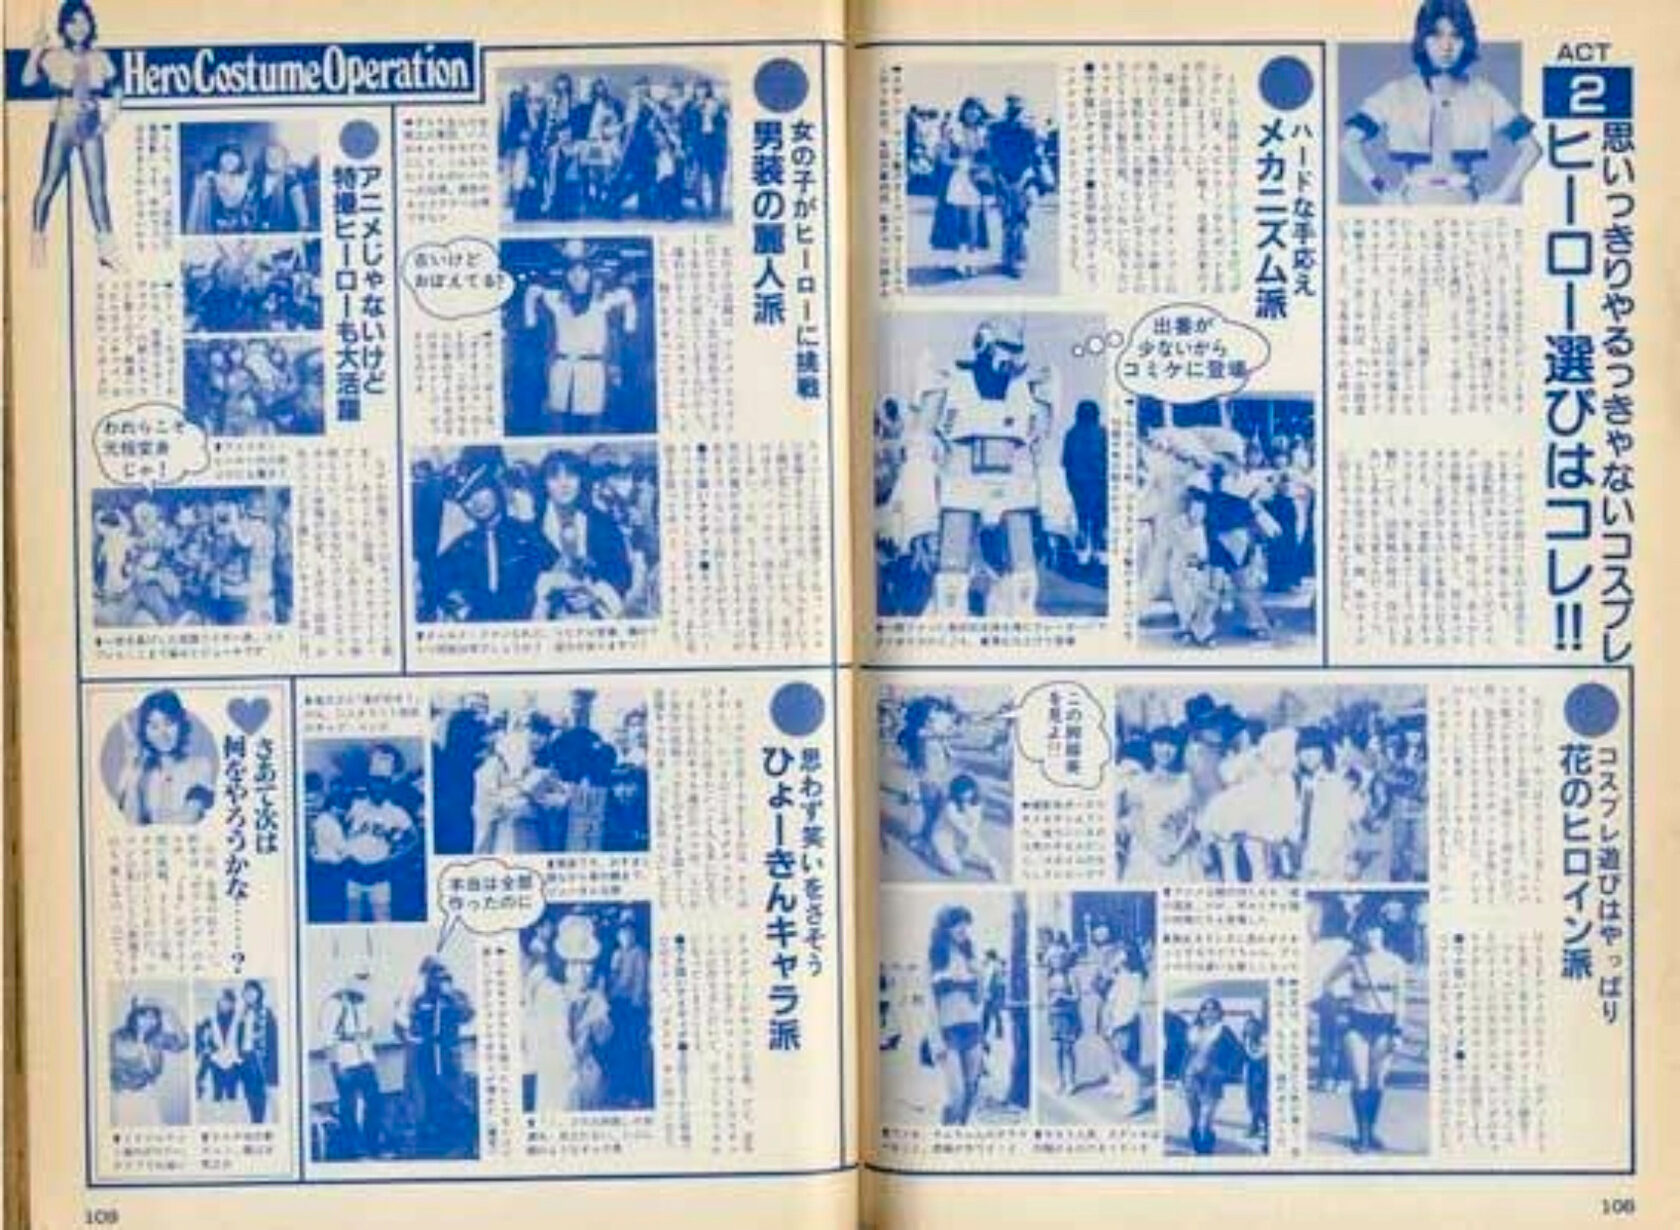 вырезка из японской газеты про косплей часть 1